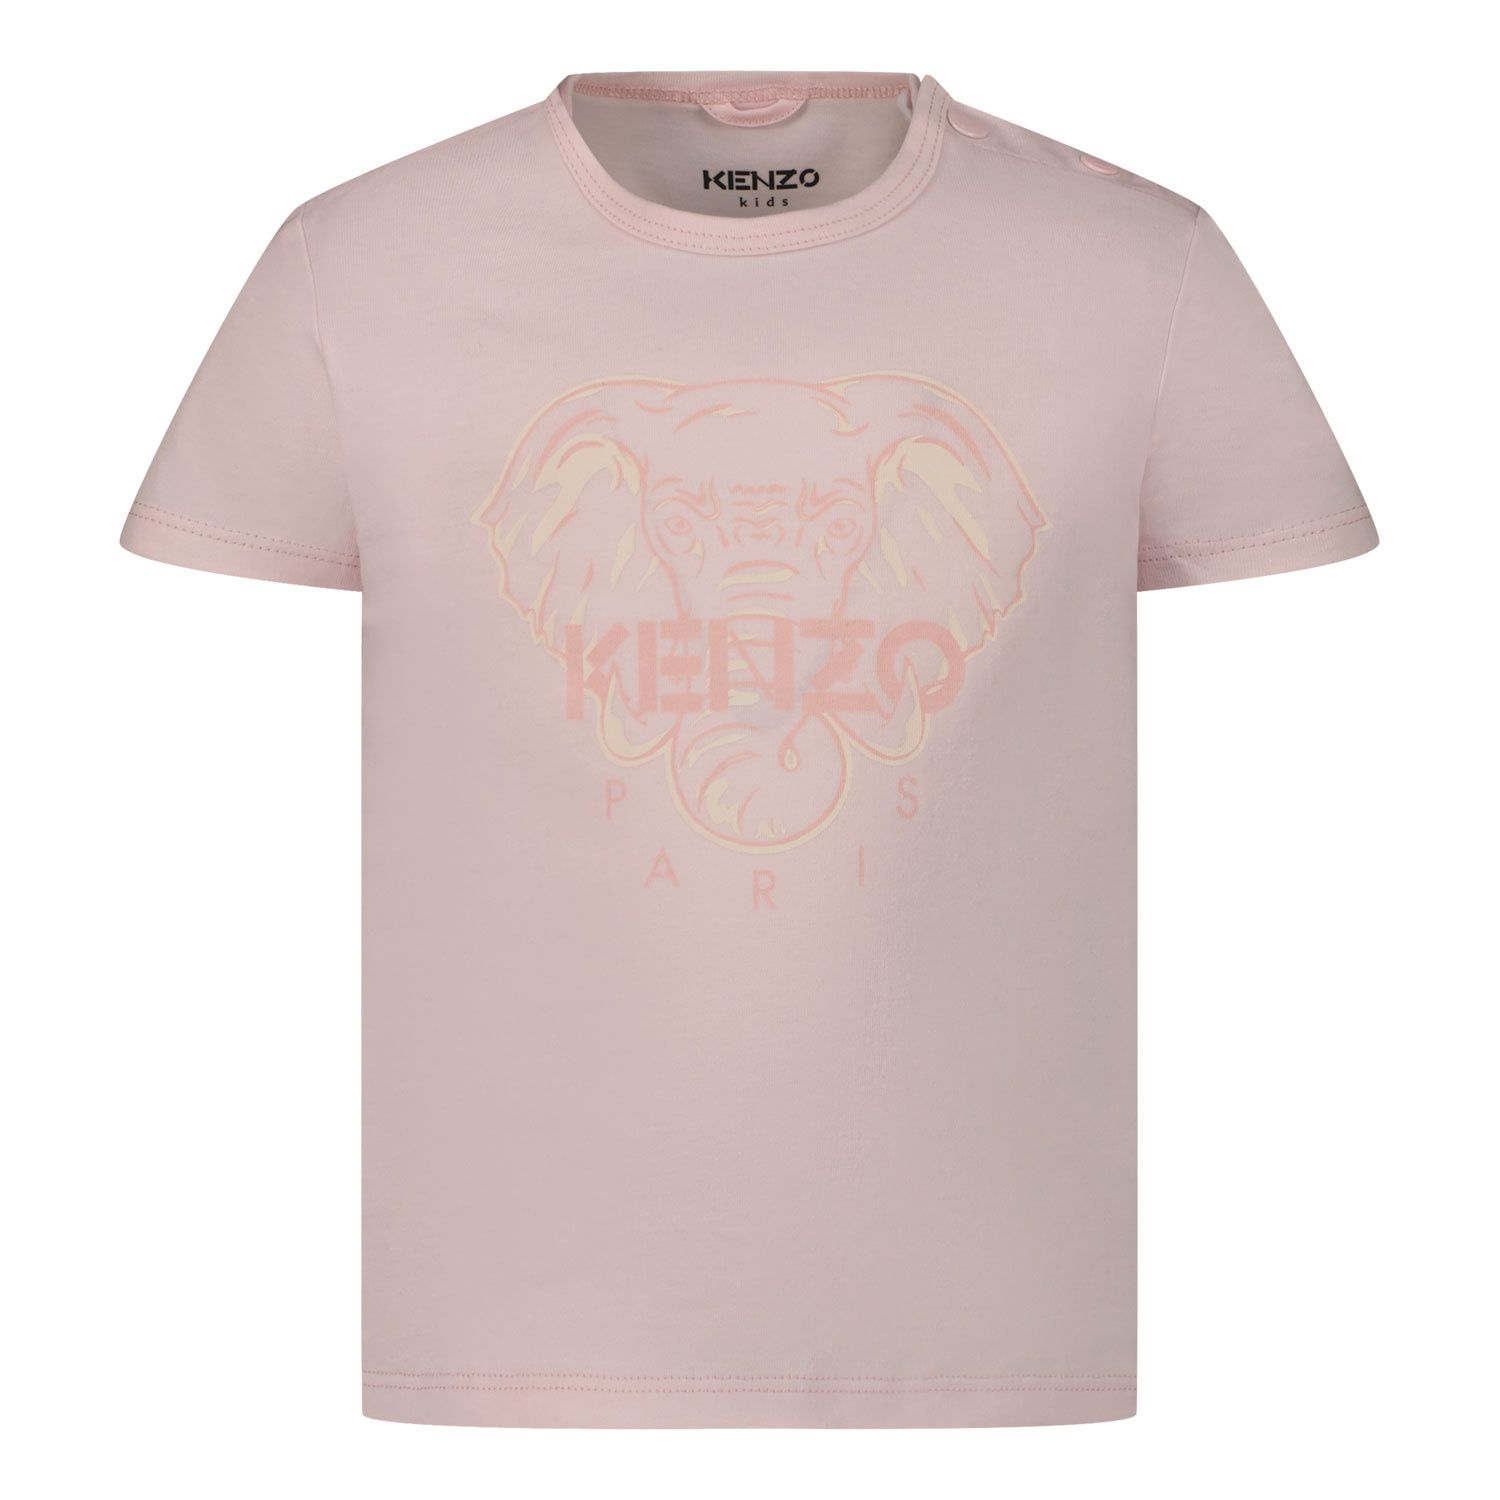 Afbeelding van Kenzo K95075 baby t-shirt licht roze